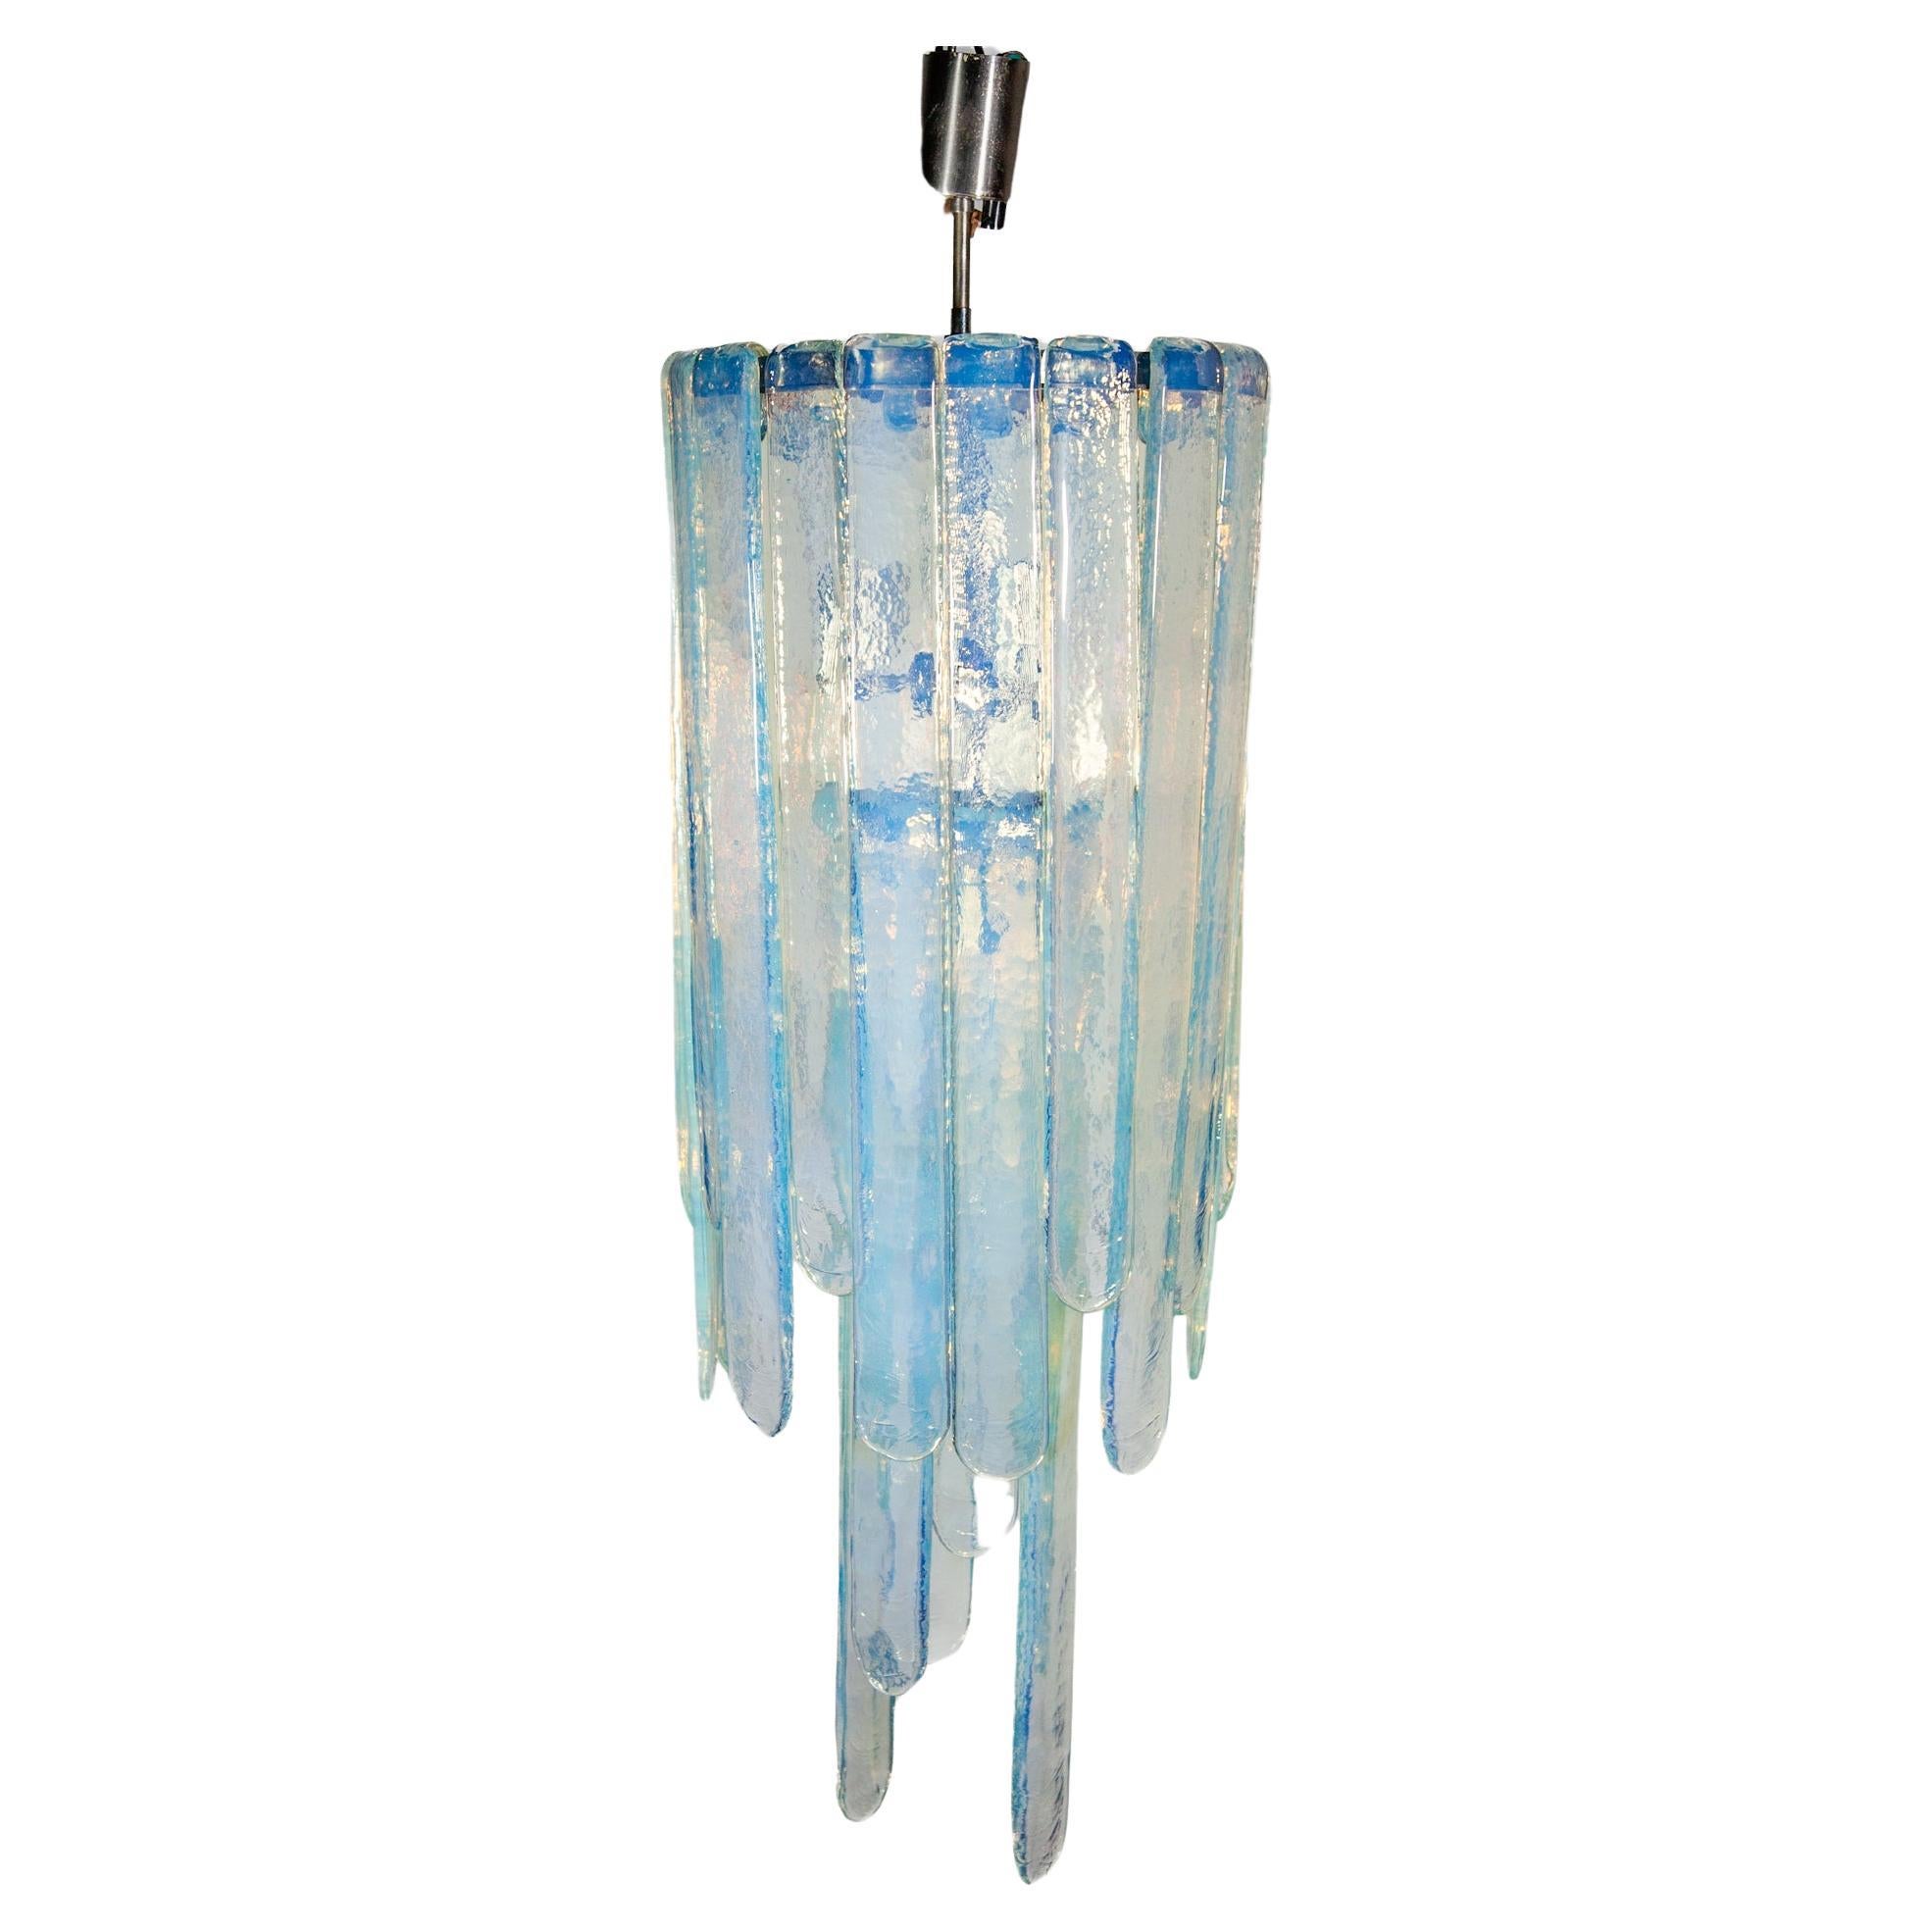 Lustre moderne vintage en verre opalescent conçu par Carlo Nason pour Mazzega, Italie, années 1960, en verre d'art bleu opalescent, composé de trois longueurs de lames de verre. Il mesure 98 cm de haut dans sa composition actuelle, mais peut être